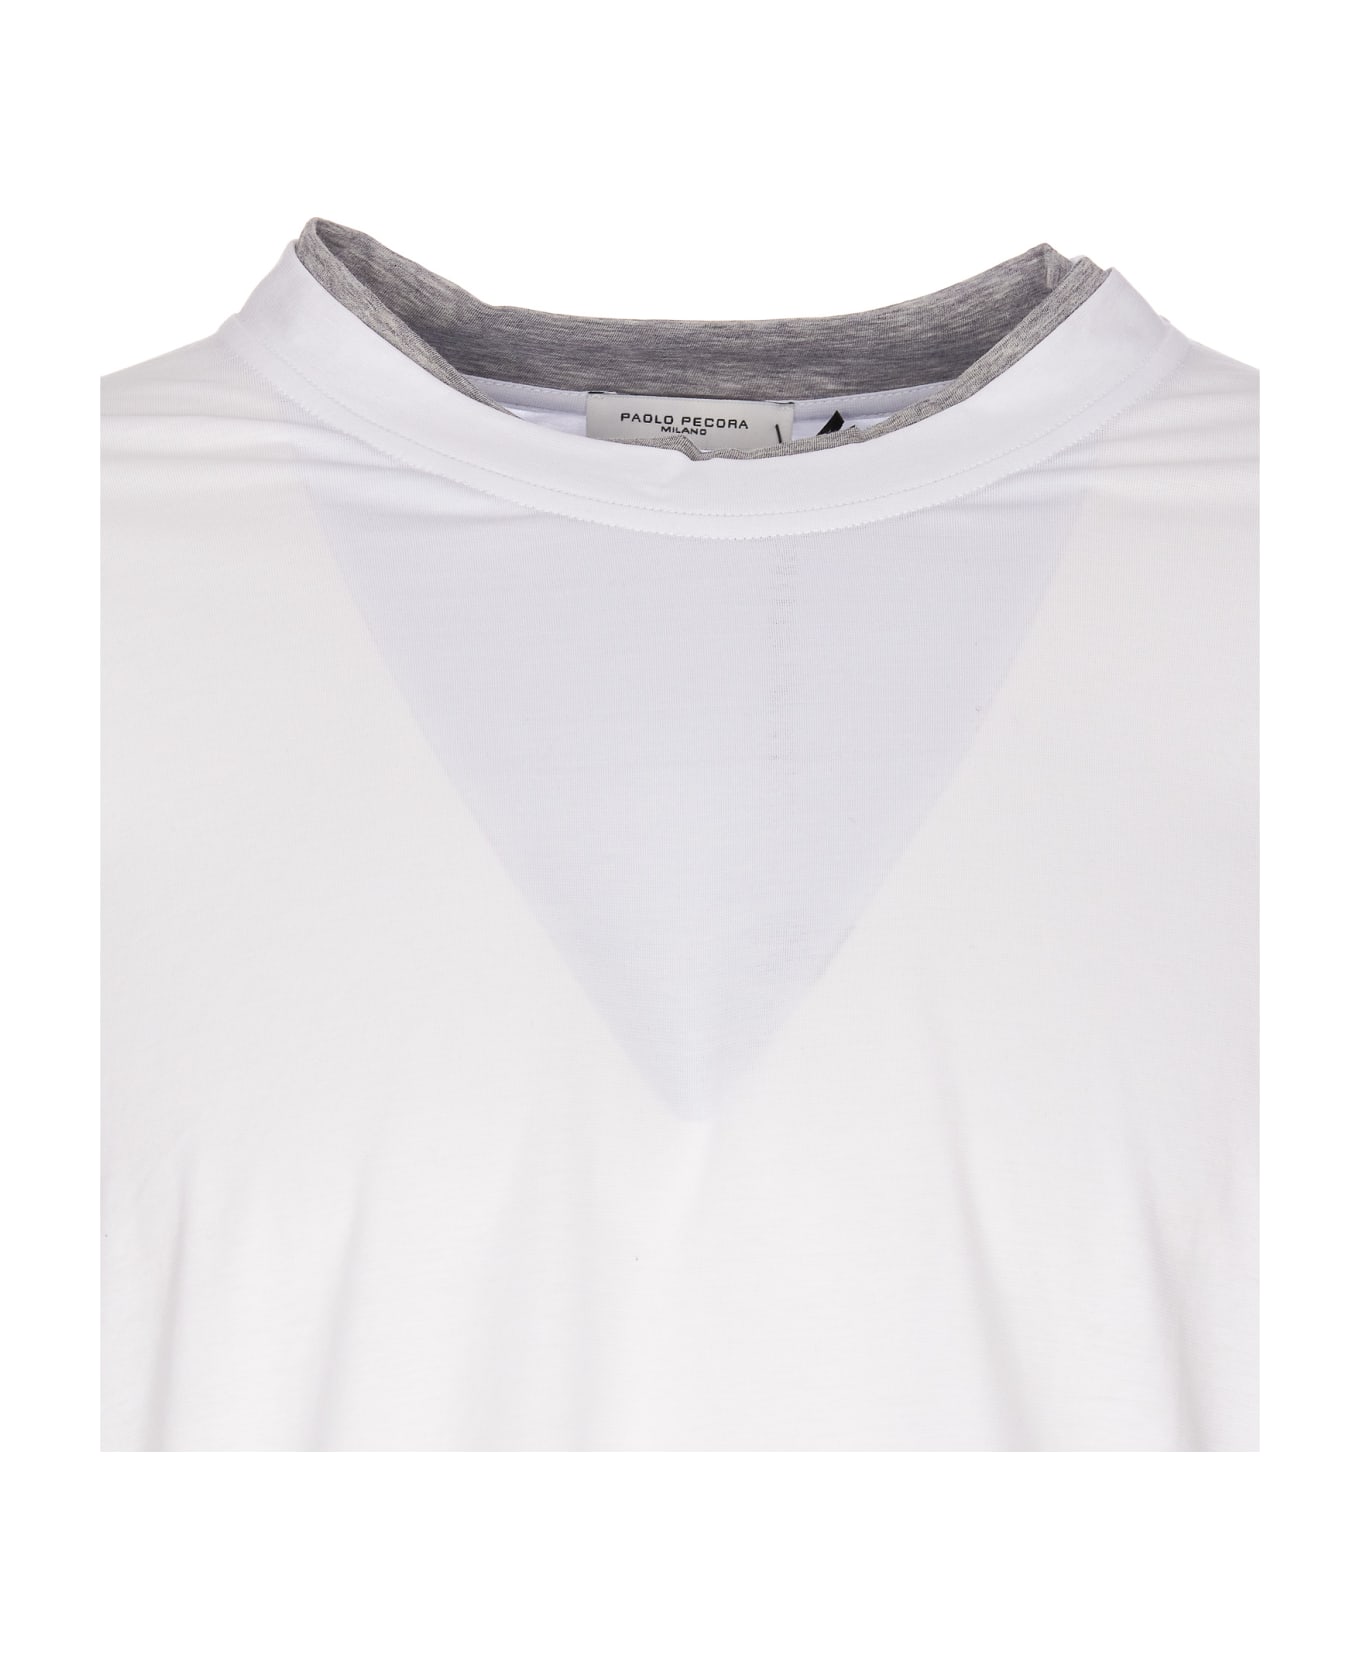 Paolo Pecora T-shirt - Bianco シャツ